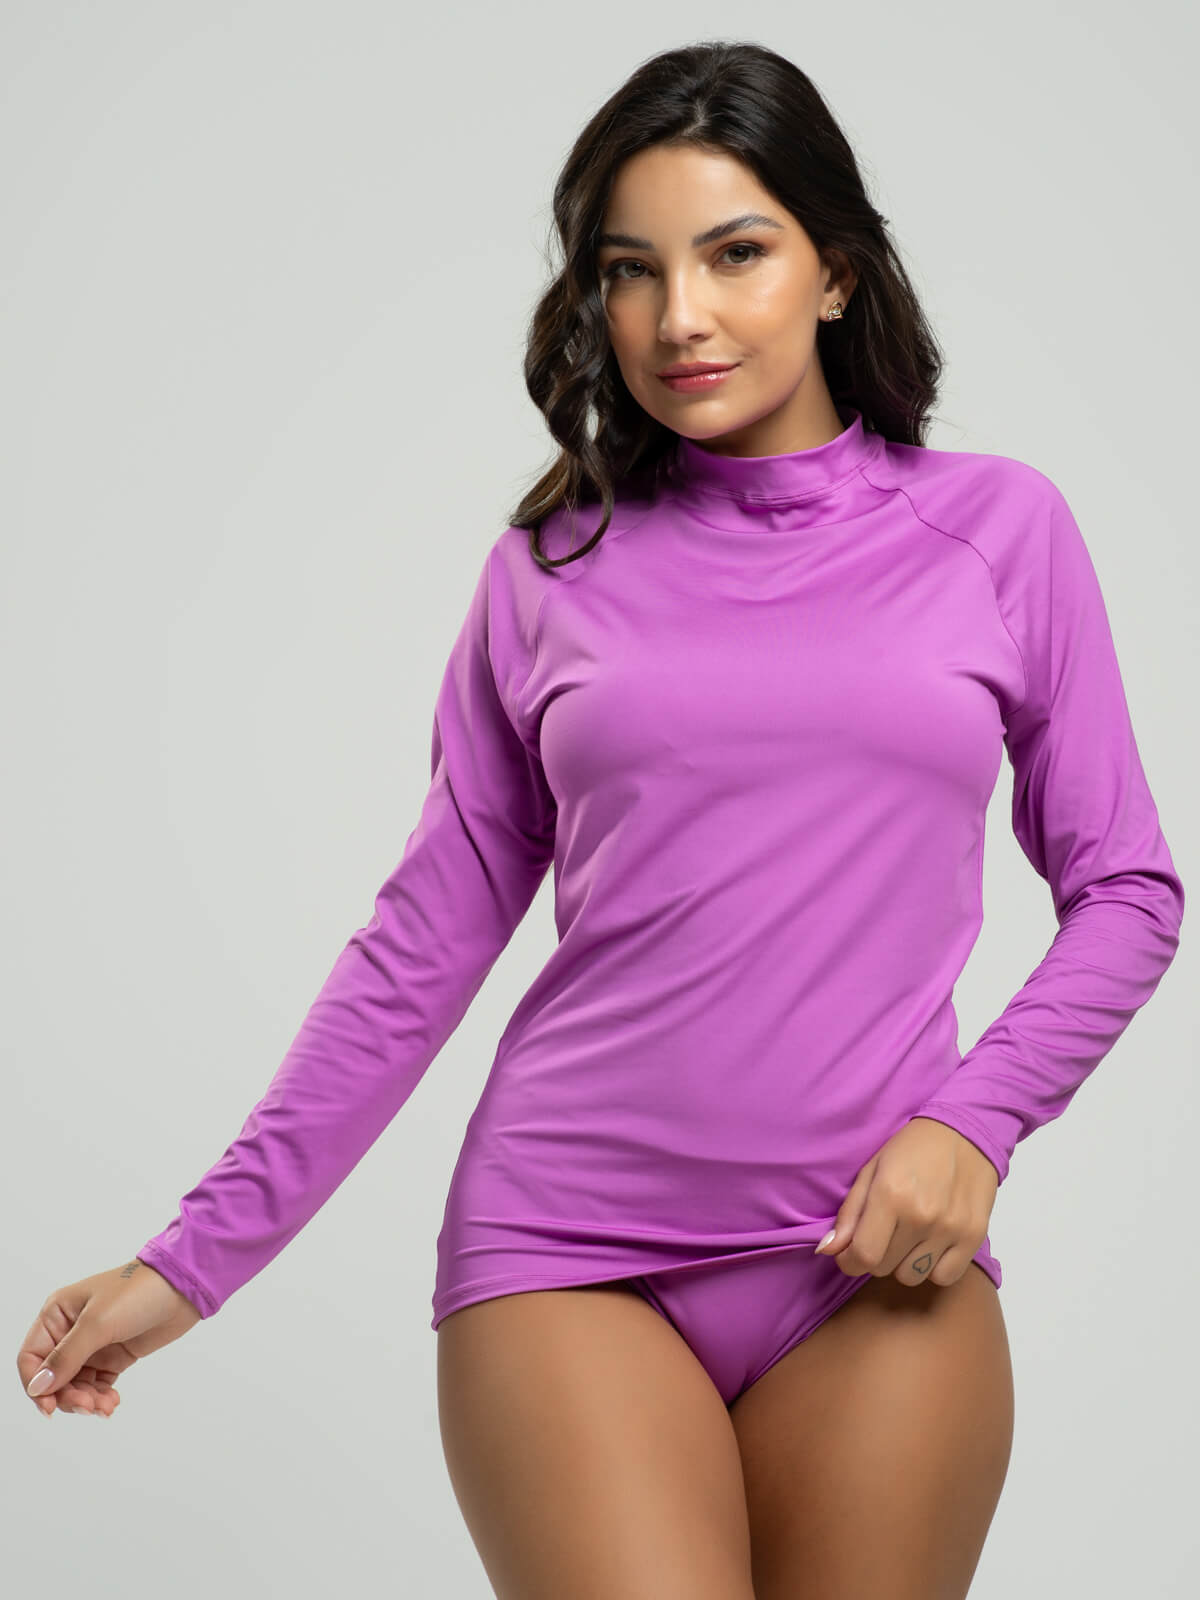 Blusa Proteção UV Feminina Lisa Roxo - Vicbela